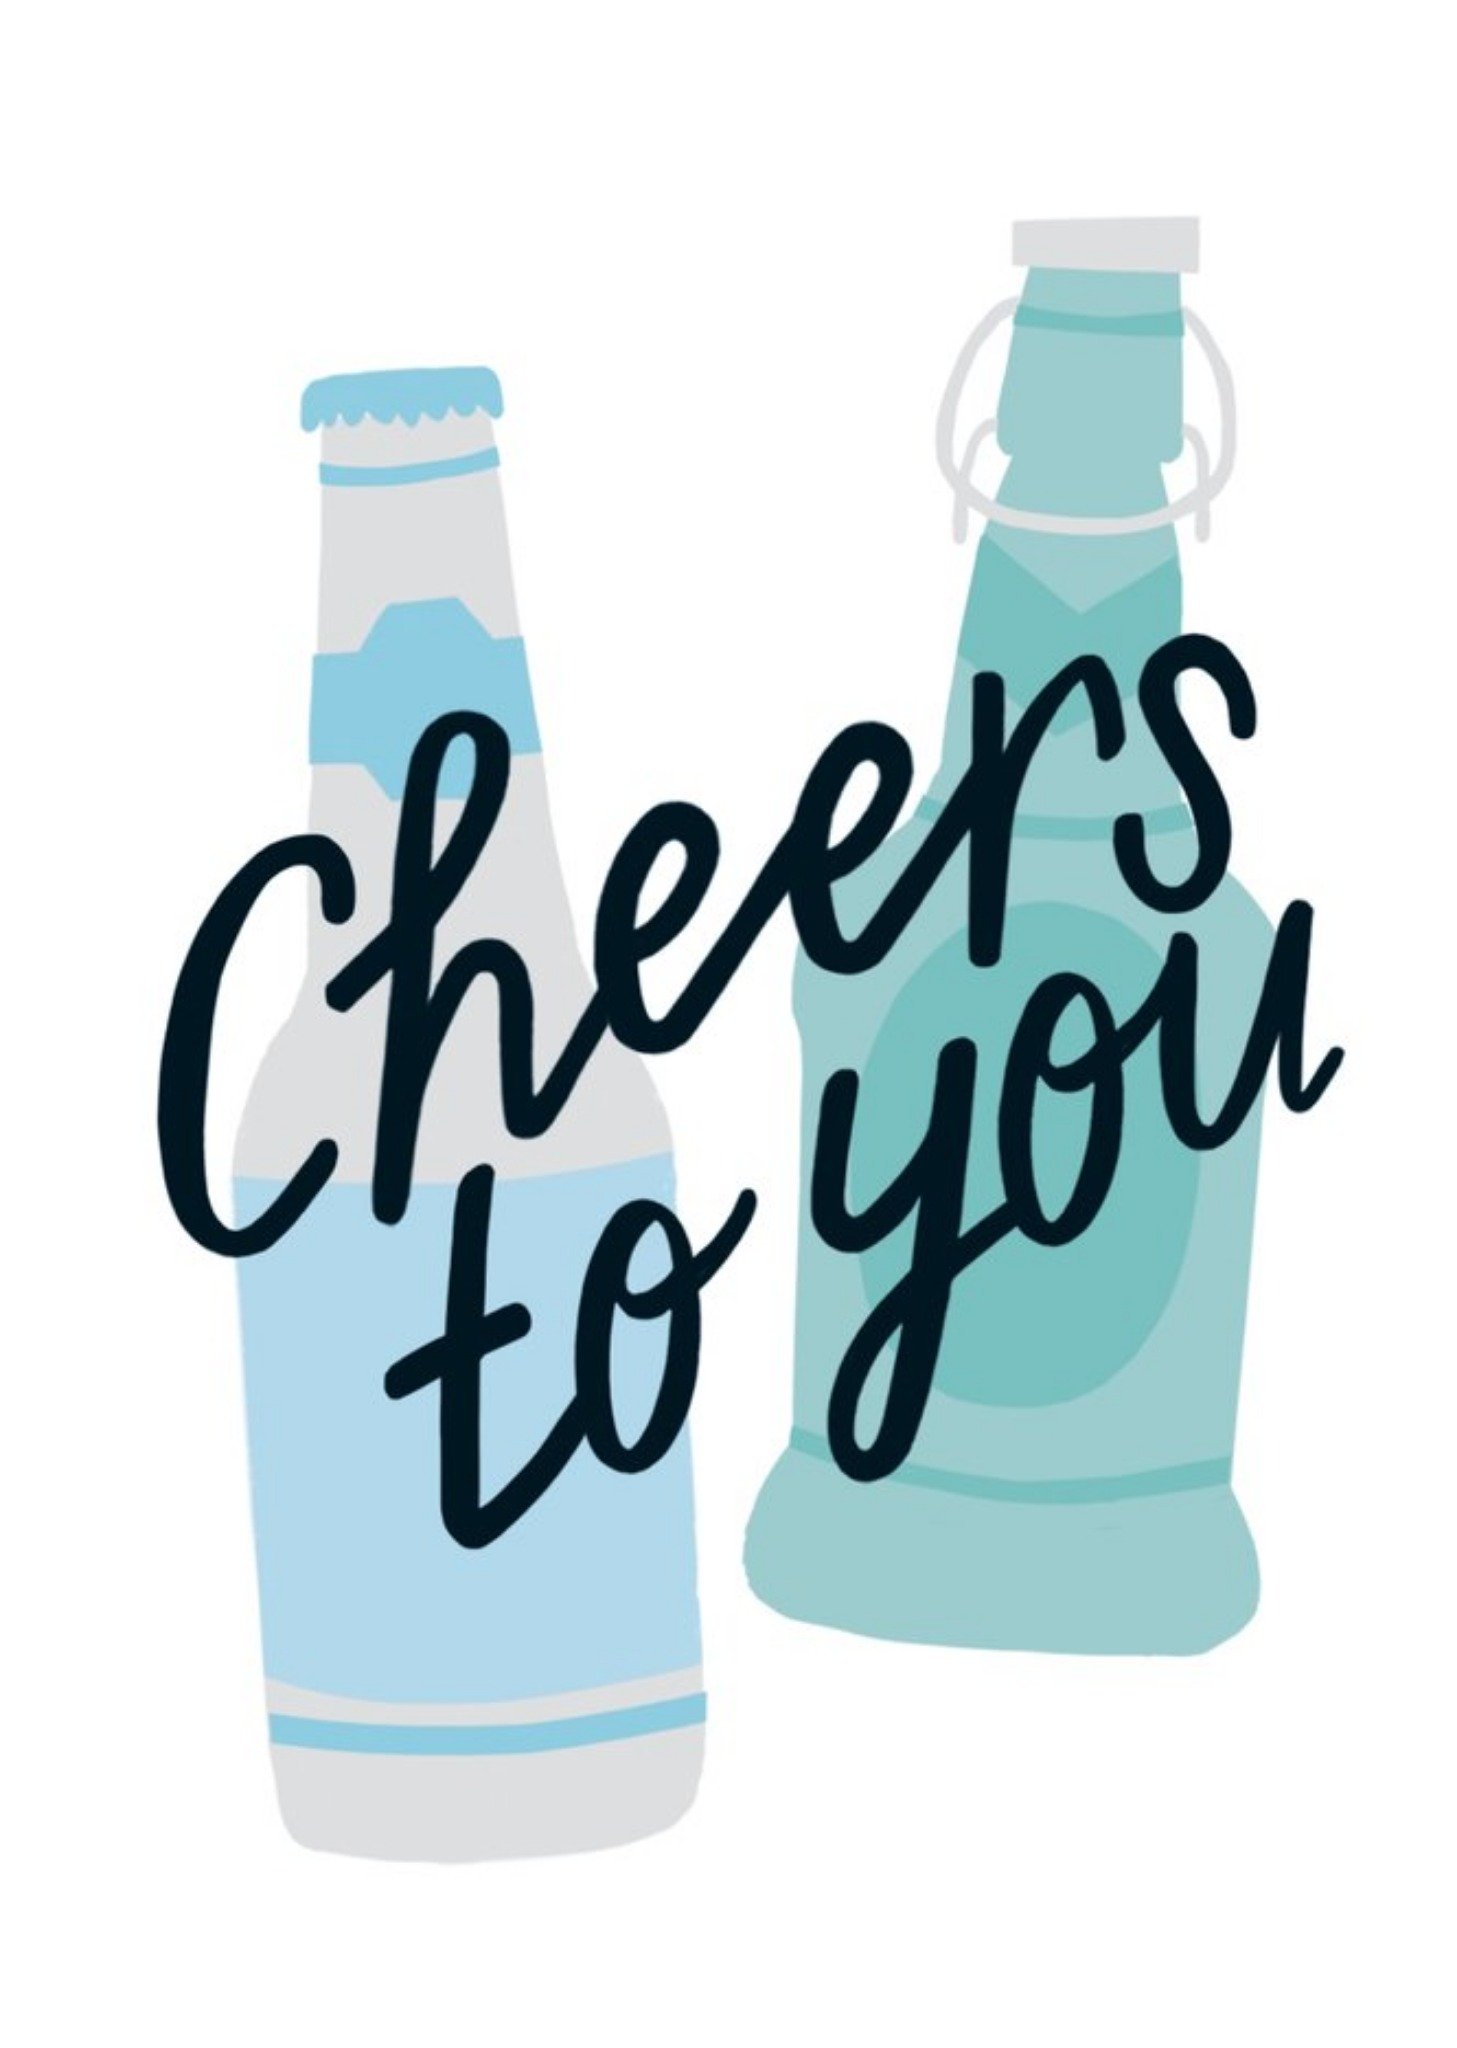 Sadler Jones Cheers To You Beer Bottles Card Ecard